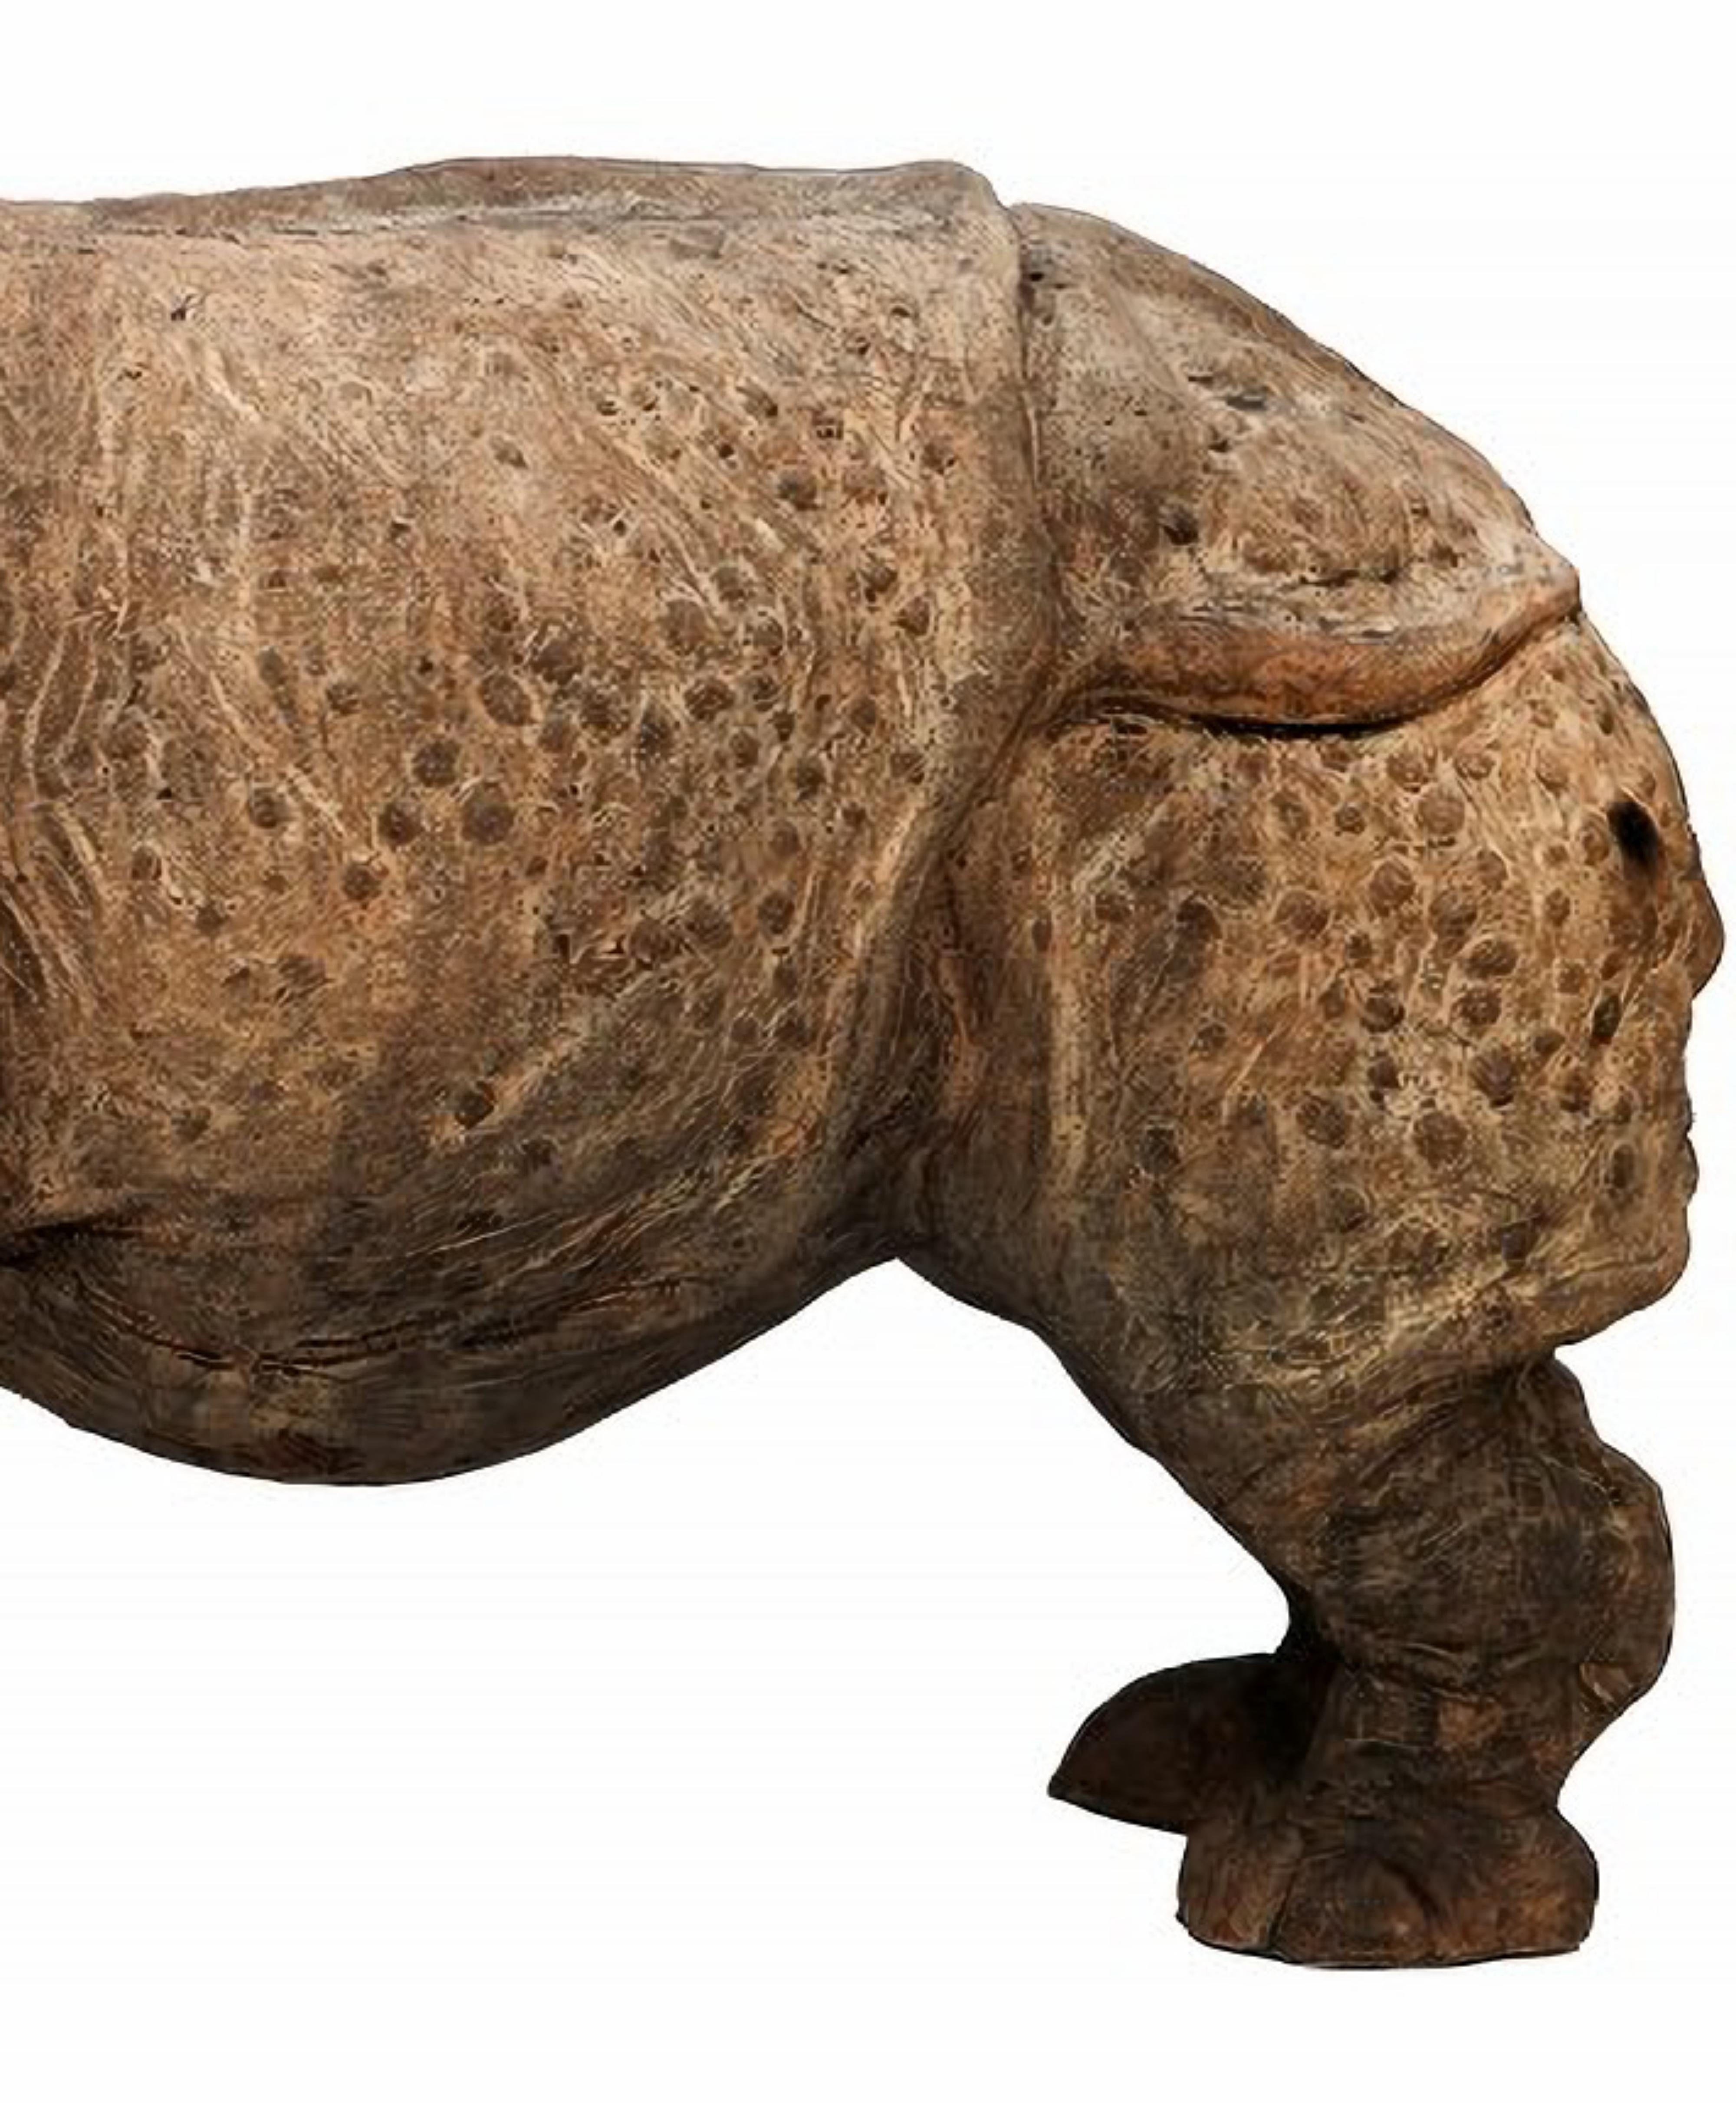 DER INDIANISCHE TUSCANY TERRACOTTA RHINO AUS ASSAM 20.
Florenz - Italien
Typisches indisches Nashorn aus Assam.
HÖHE 35 cm
BREITE 27 cm
LÄNGE 37 cm
GEWICHT 15 kg
MATERIAL Terrakotta